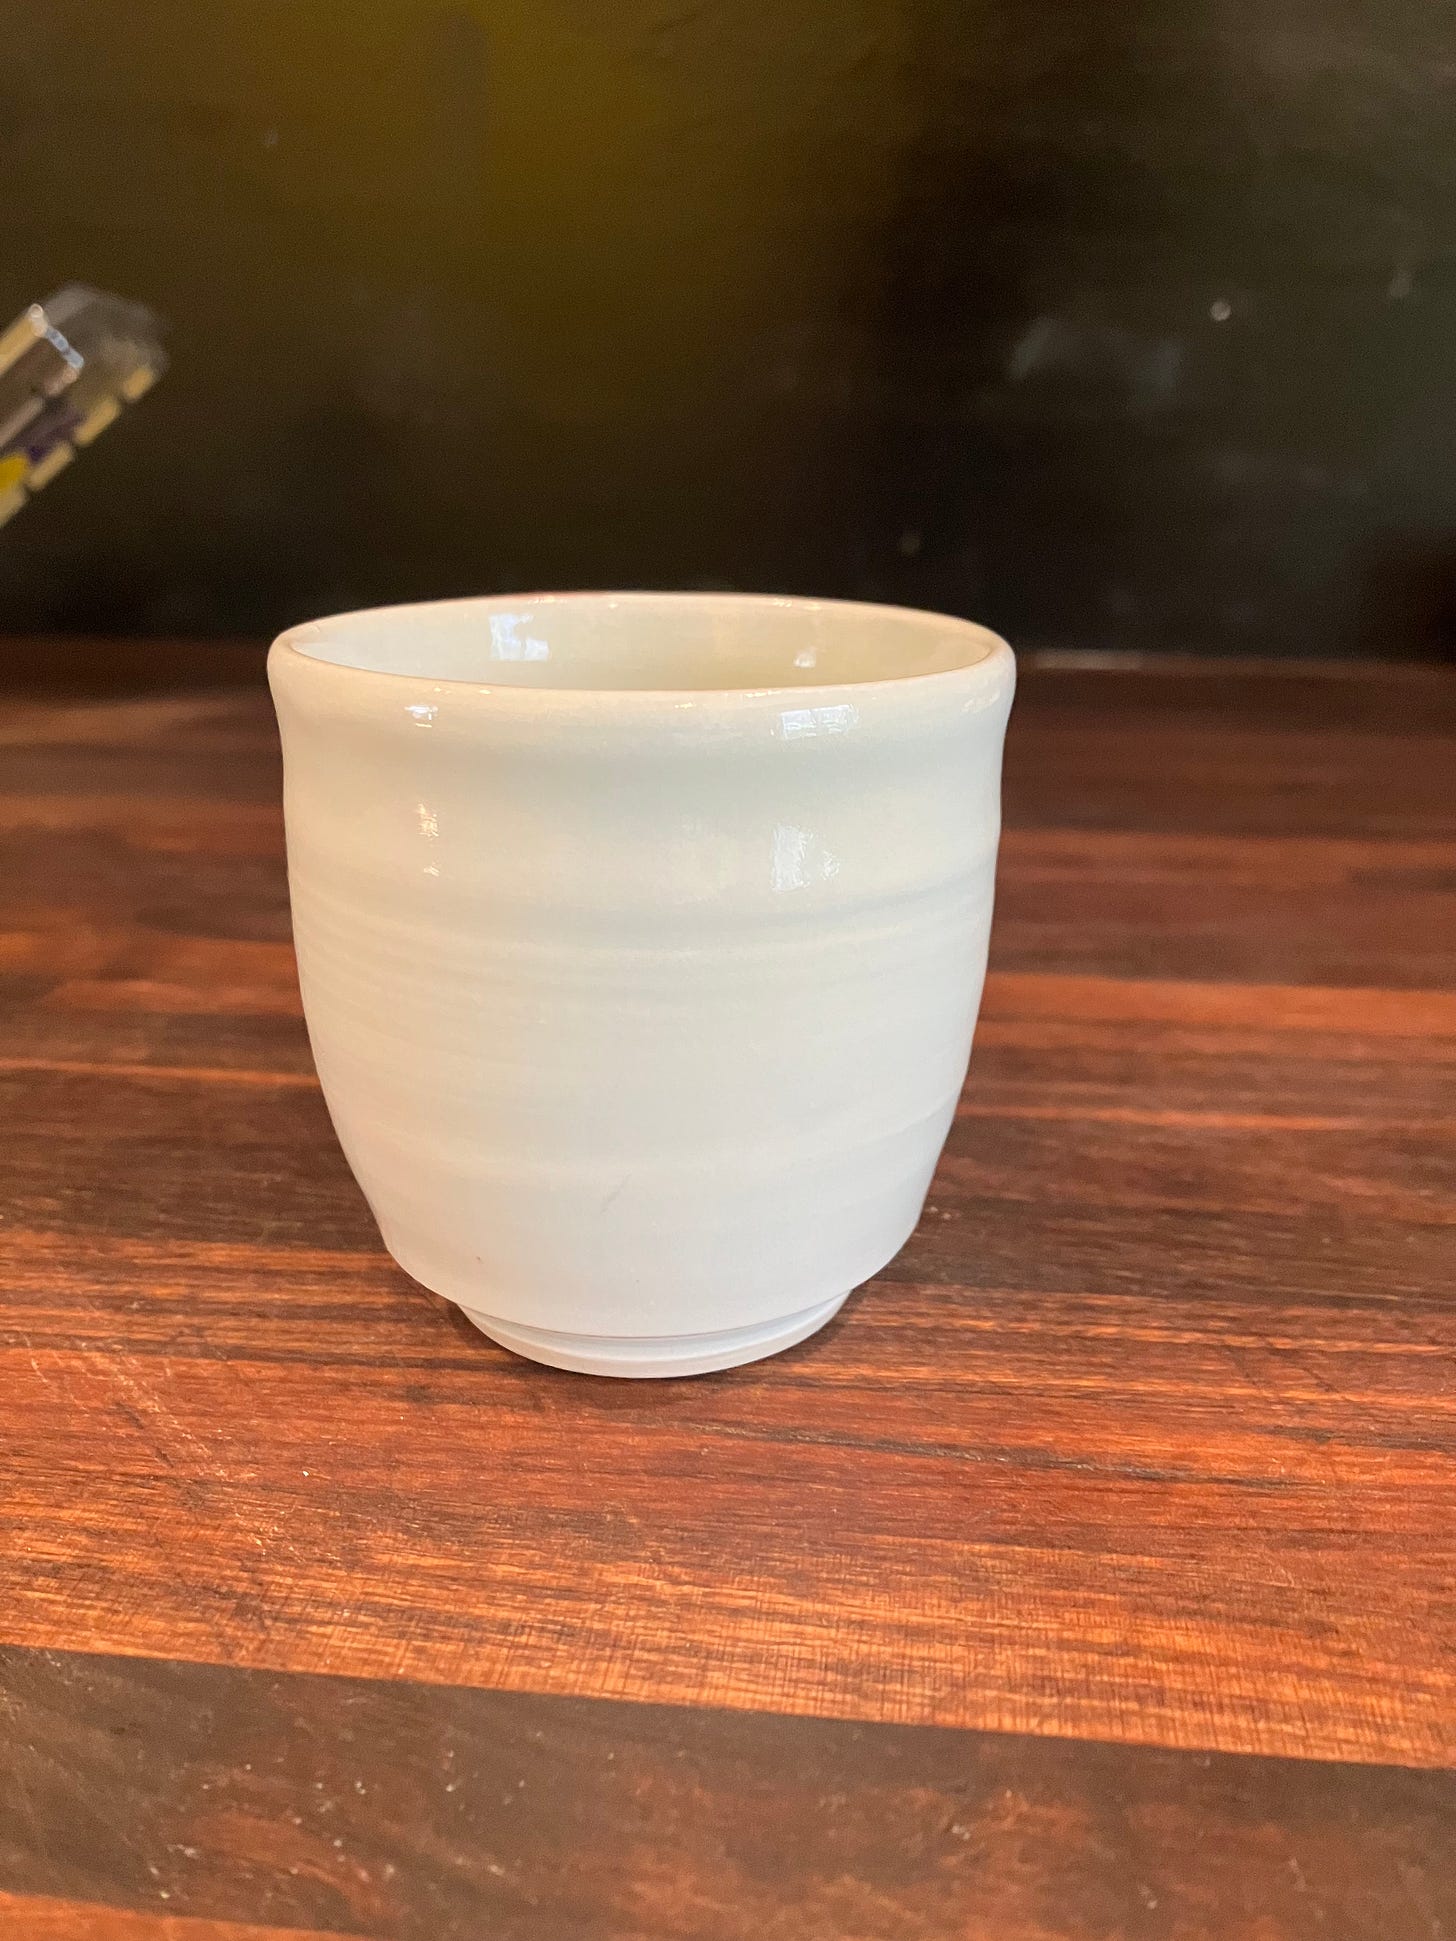 light blue celadon porcelain demitasse cup on a walnut butcher block with a black background